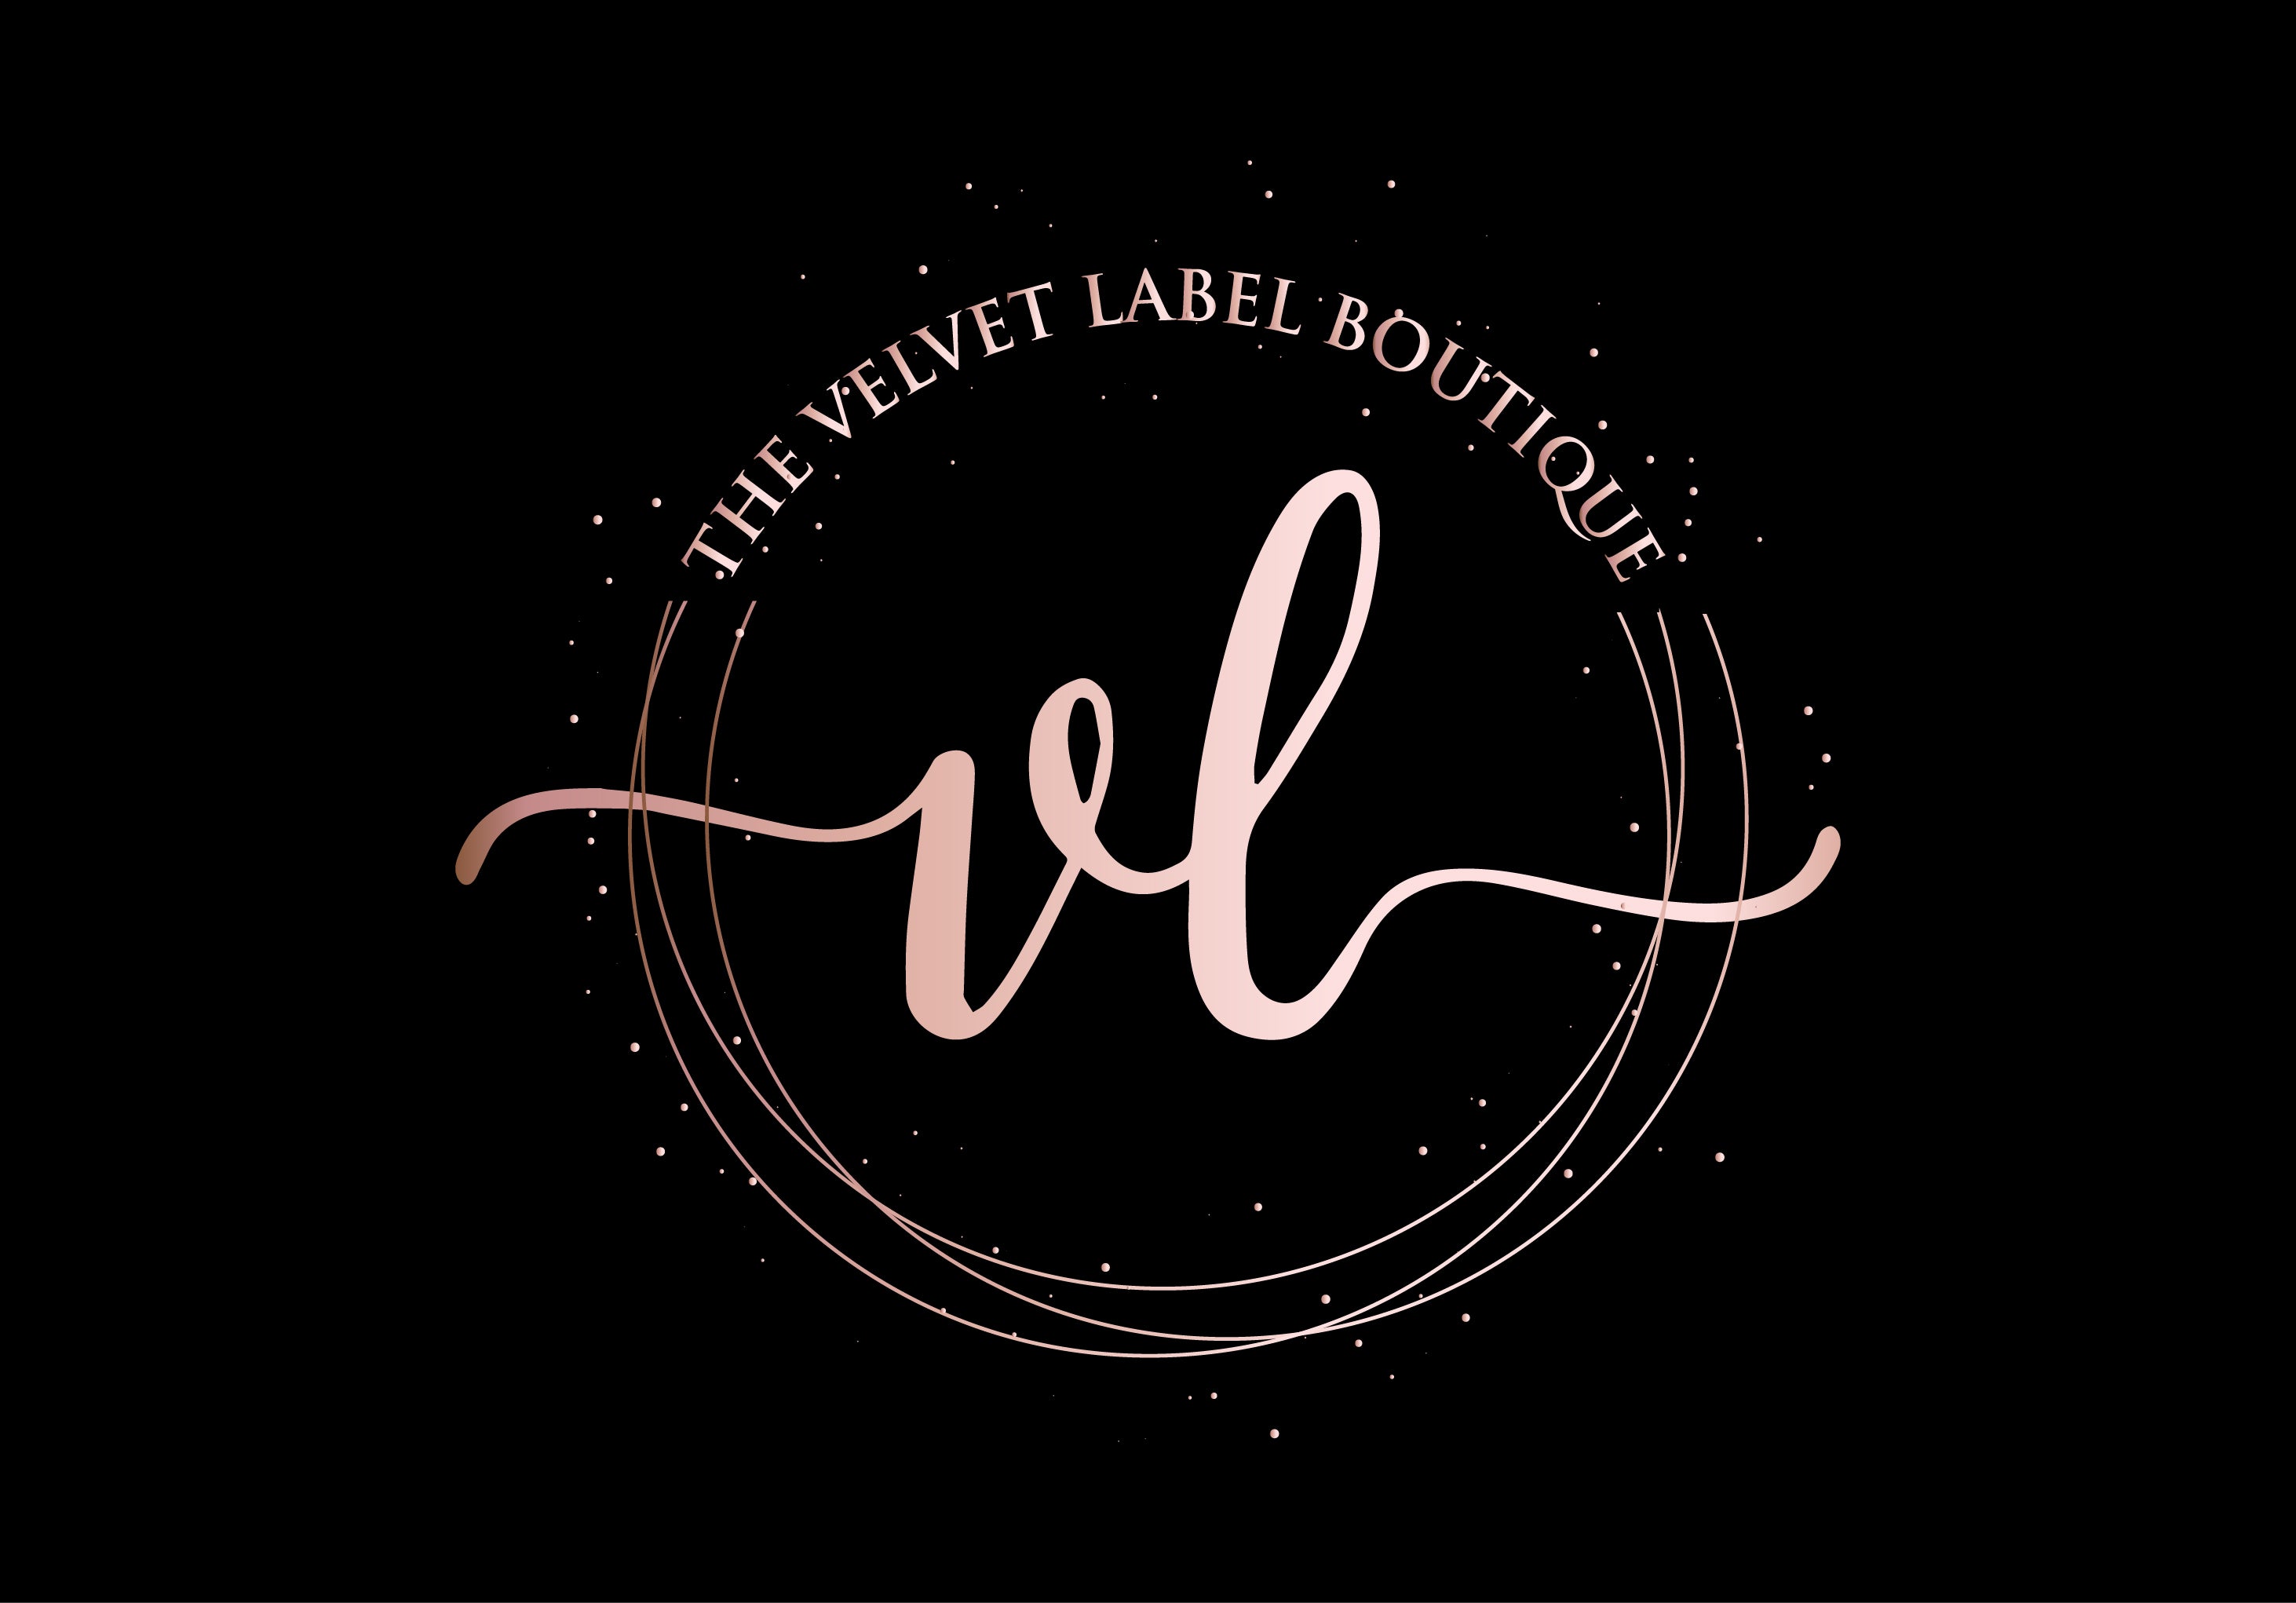 The Velvet Label boutique